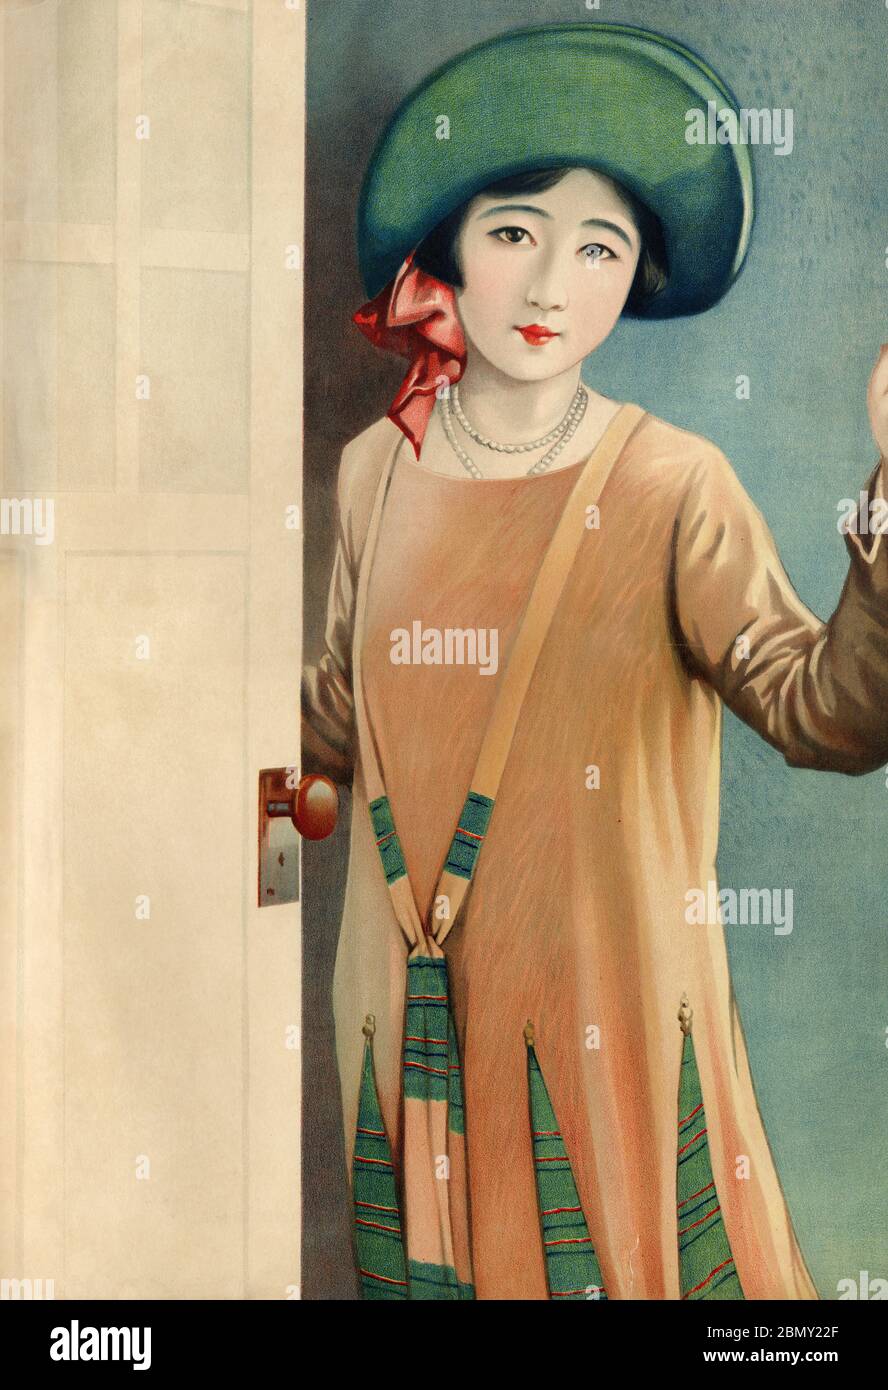 [ 1920er Jahre Japan - Illustration der japanischen Frau in Kleid ] - schöne japanische Frau in einem westlichen Kleid. Dieses Kunstwerk wurde als Plakatmuster (ポスターの原画見本) während der Taisho-Periode (1912-1926) verwendet. Vintage-Poster des 20. Jahrhunderts. Stockfoto